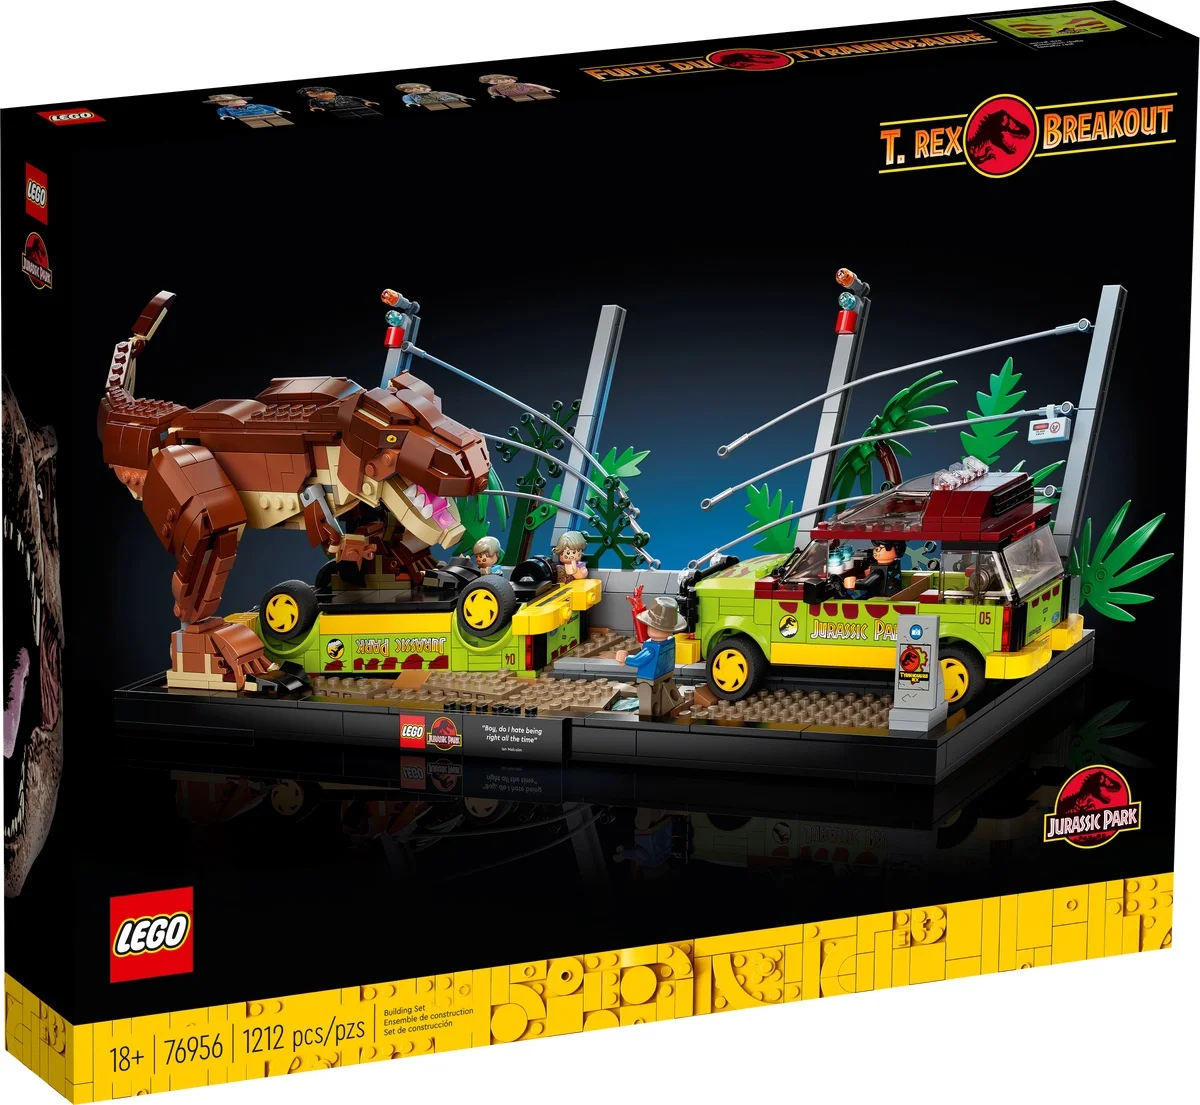 LEGO анонсировал набор с легендарной сценой из «Парка Юрского периода» - фото 1